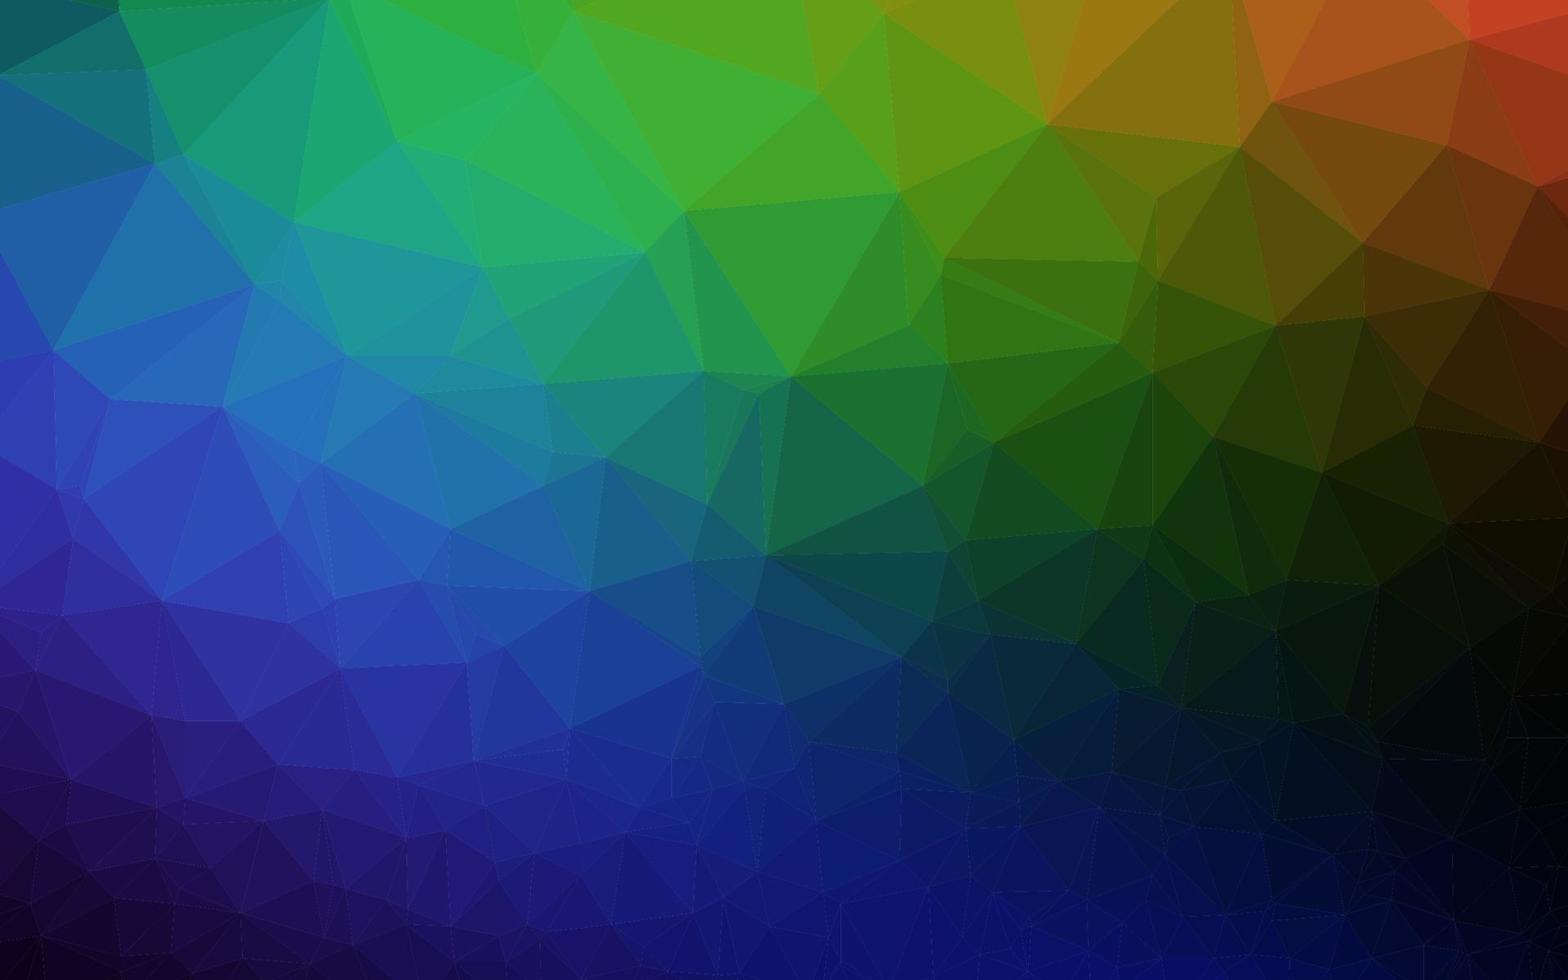 donkere veelkleurige, regenboog vector veelhoek abstracte achtergrond.